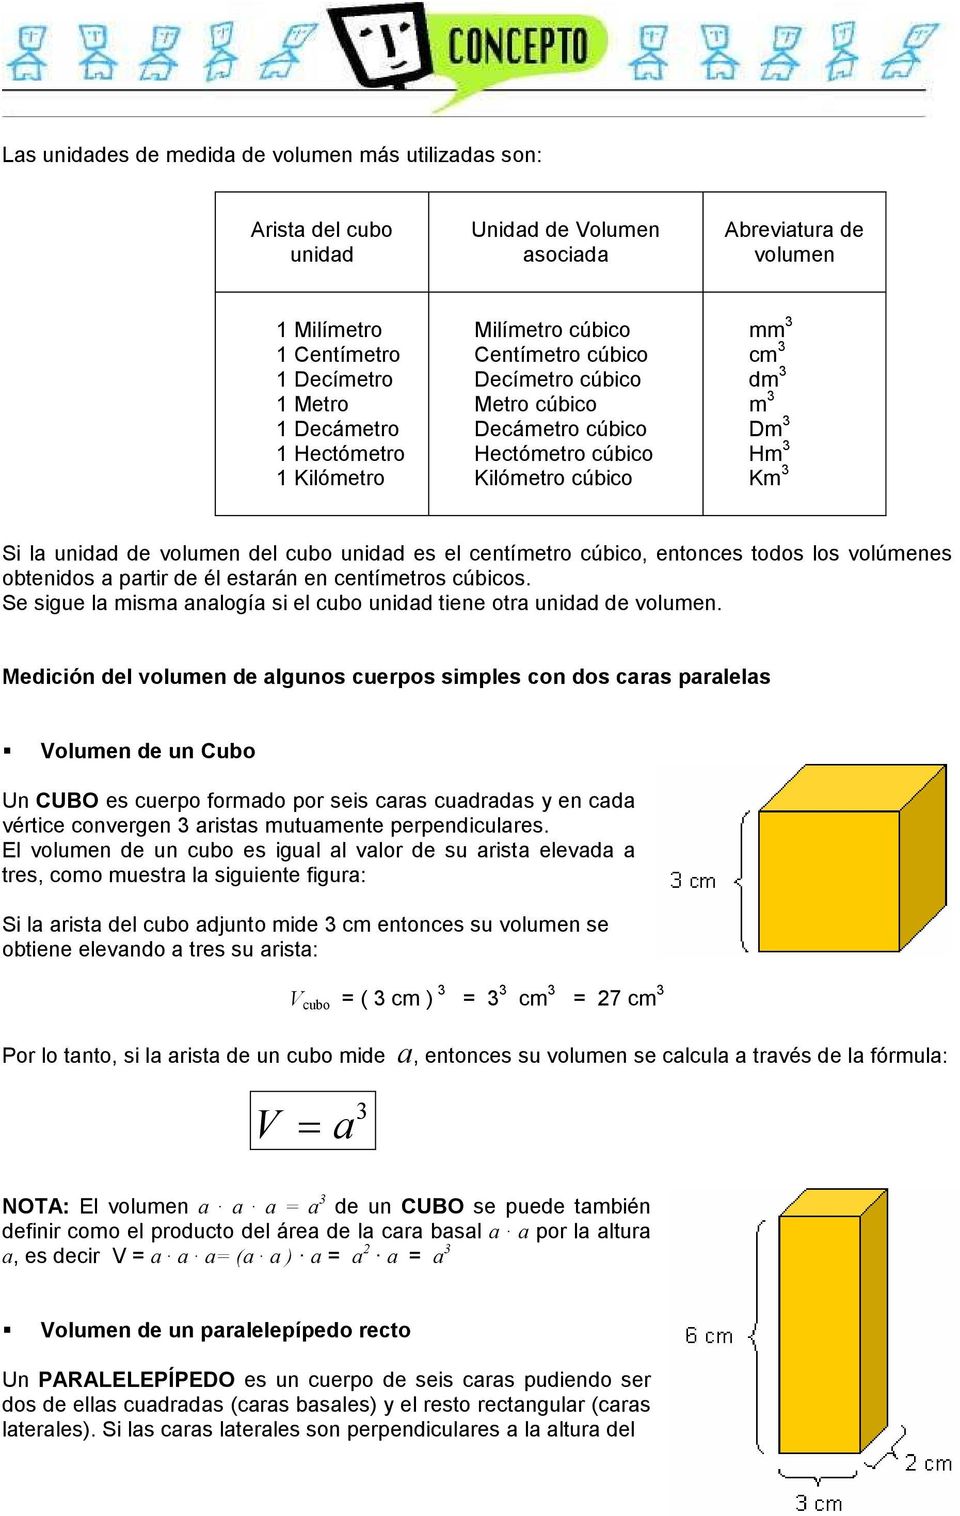 centímetro cúbico, entonces todos los volúmenes obtenidos a partir de él estarán en centímetros cúbicos. Se sigue la misma analogía si el cubo unidad tiene otra unidad de volumen.